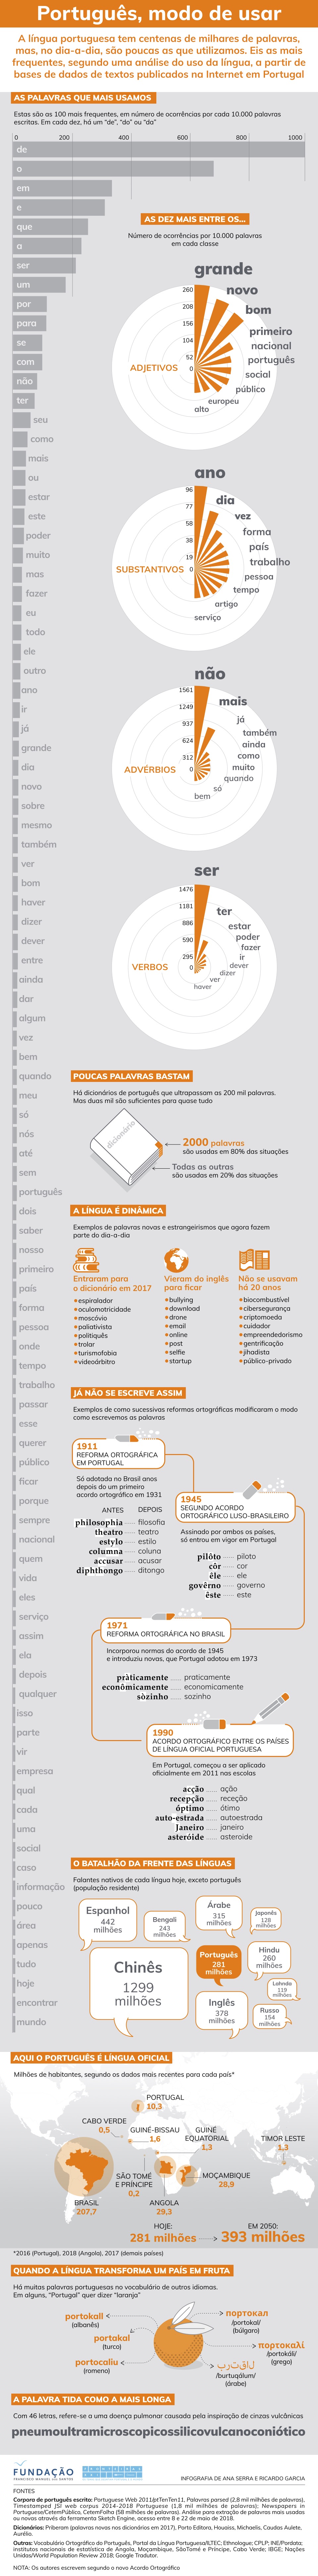 Infografia: Português, modo de usar